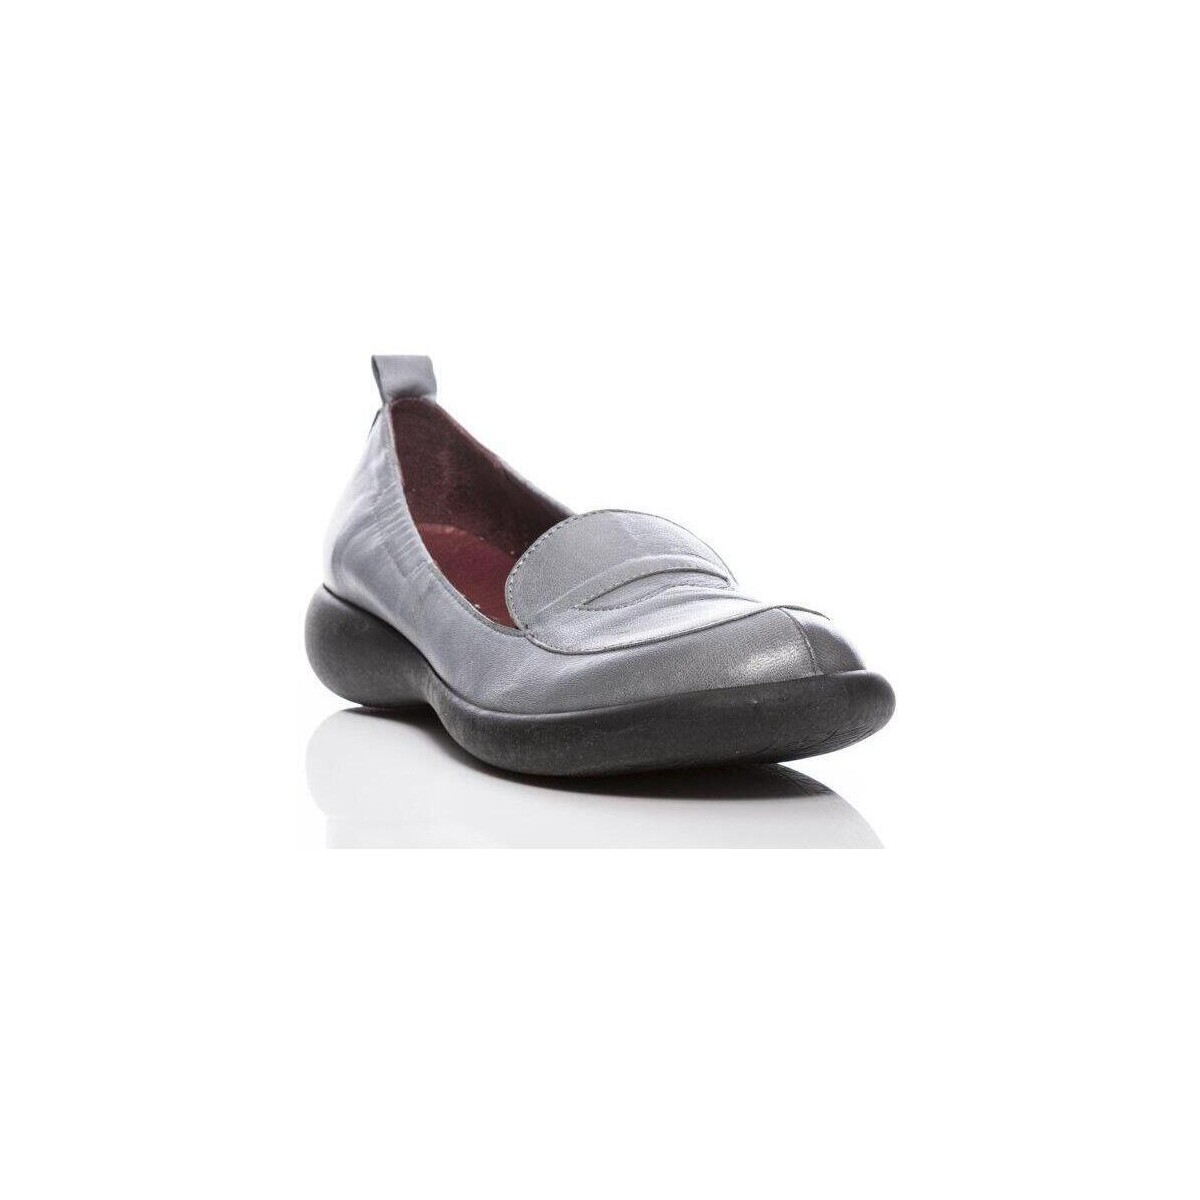 Chaussures Femme zapatillas de running Salomon mixta tope amortiguación más de 100 R7706GRIGIO Gris